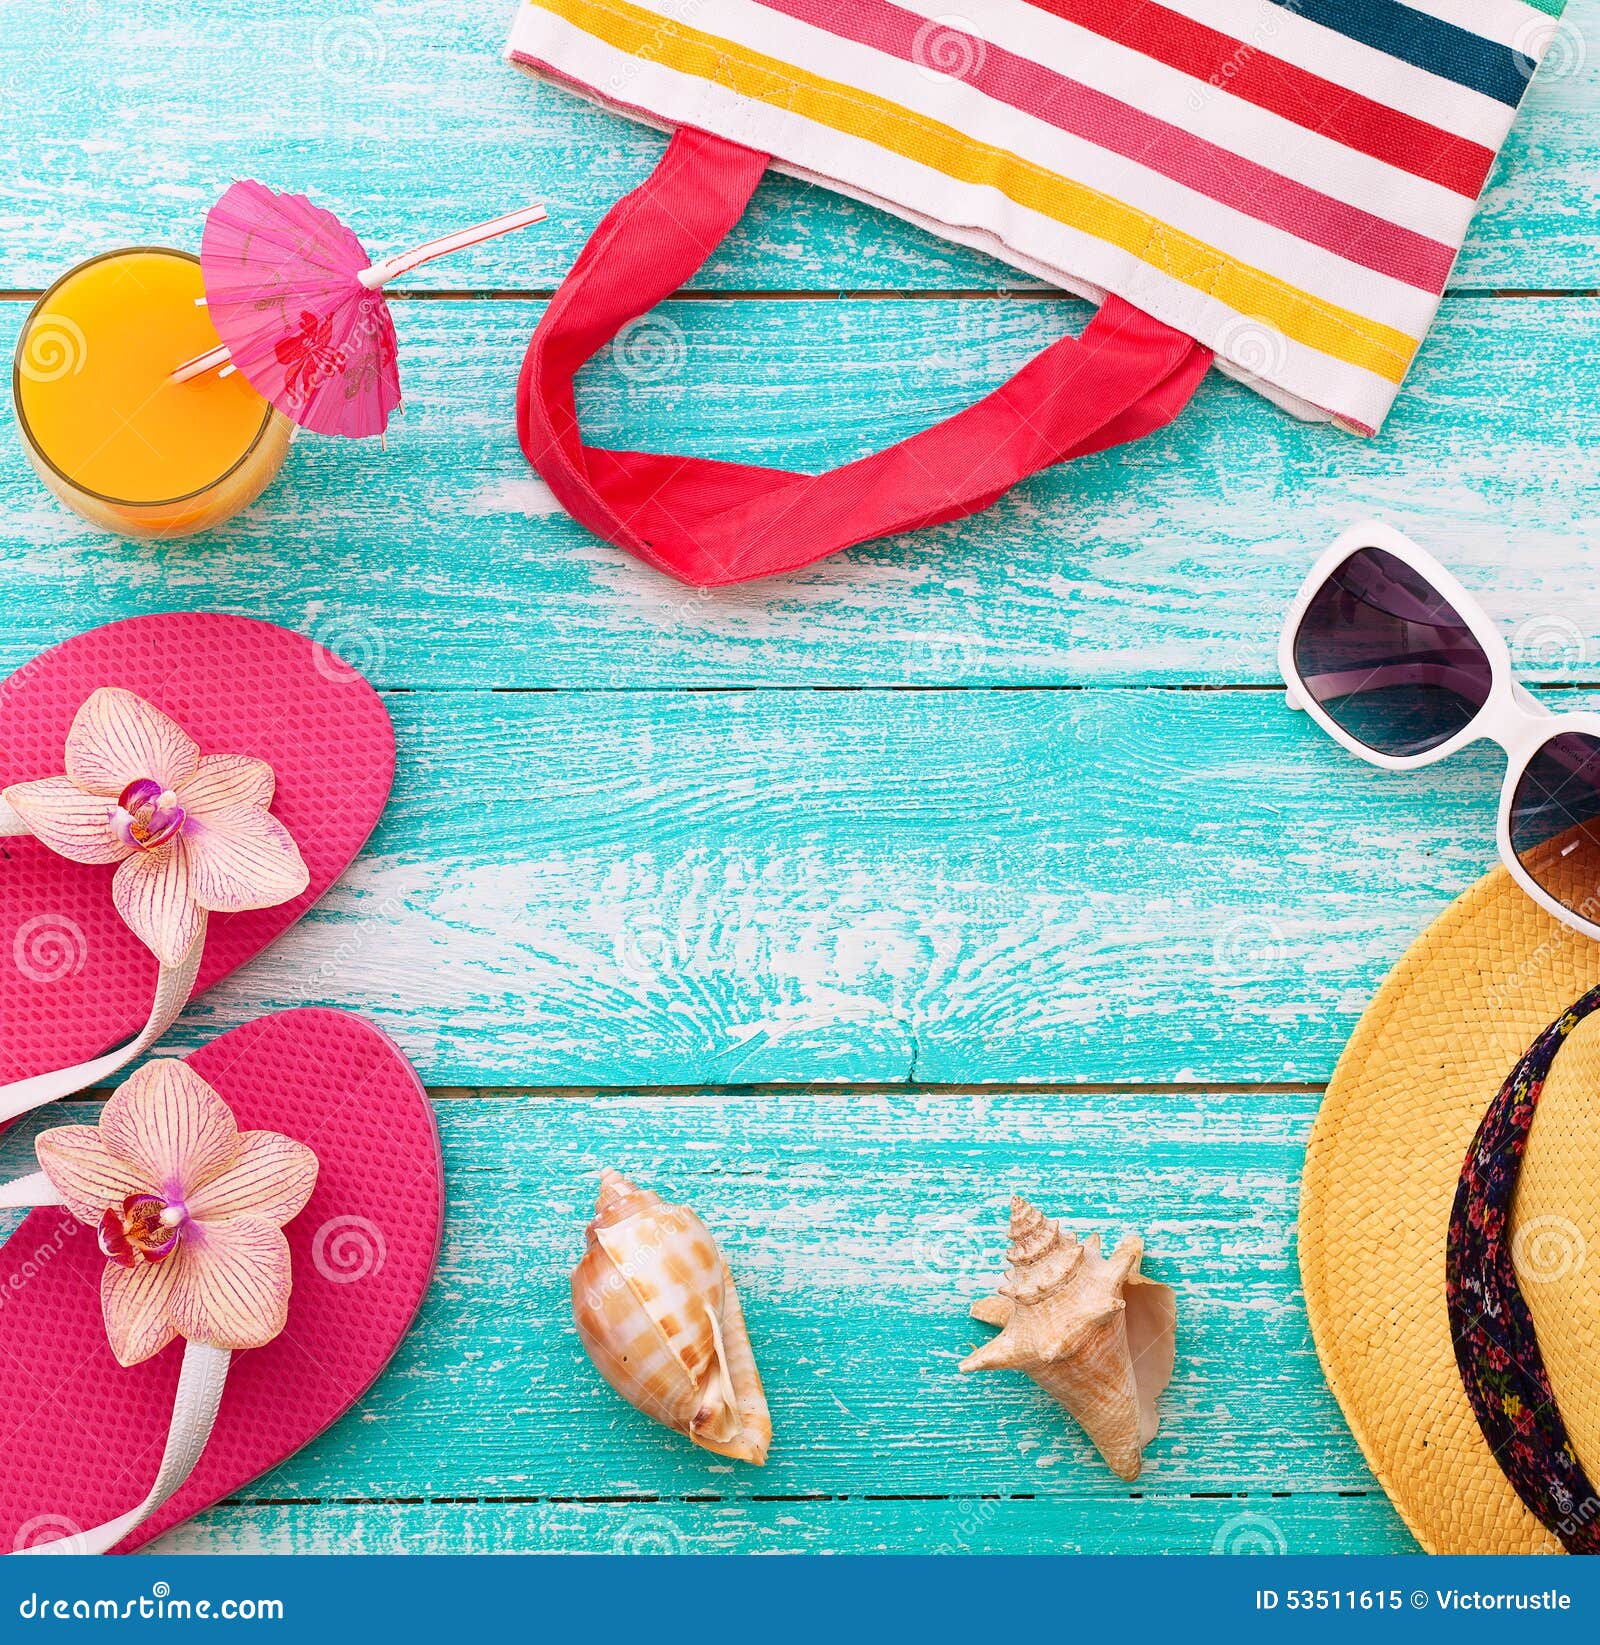 Summer Holidays. Beachwear on Wooden Background Stock Image - Image of ...